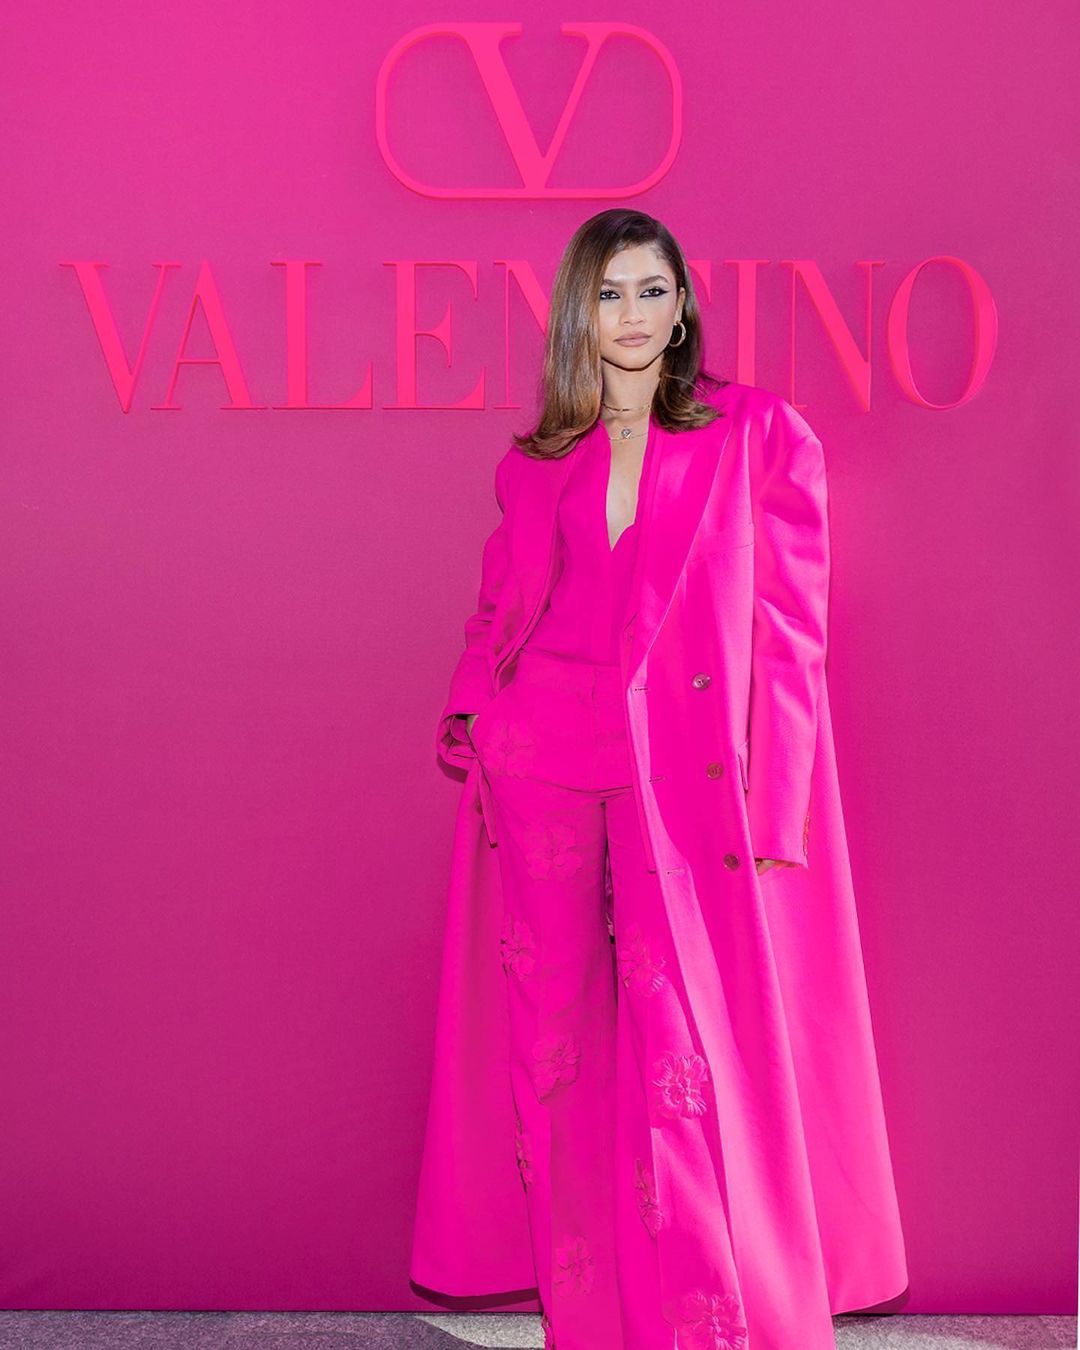 تألقت زندايا خلال حضورها عرض دار فالنتينو في أسبوع الموضة الباريسي بالبدلة الكاملة باللون الفوشيا